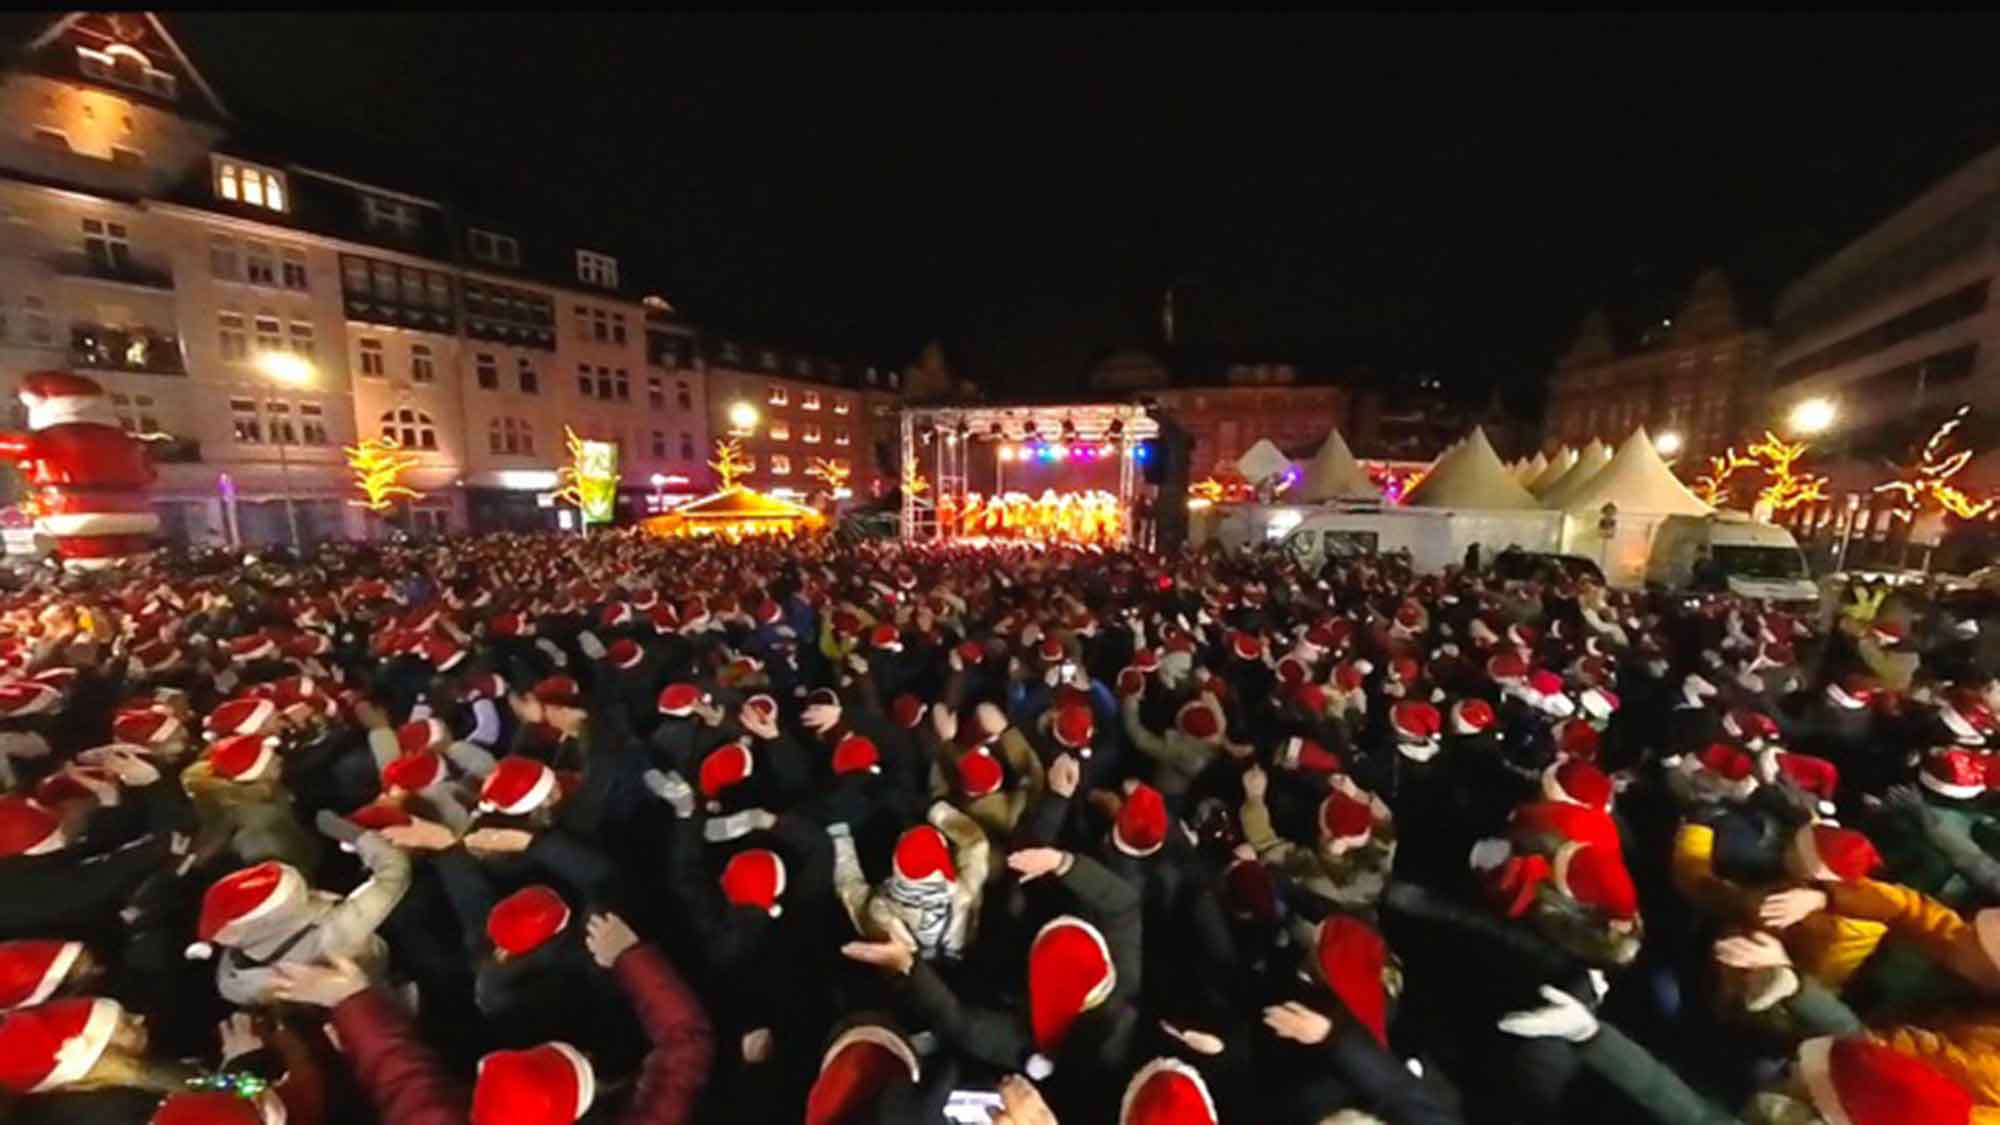 Weihnachtliche Bestleistung für den größten Weihnachtstanz bei WDR Lokalzeit